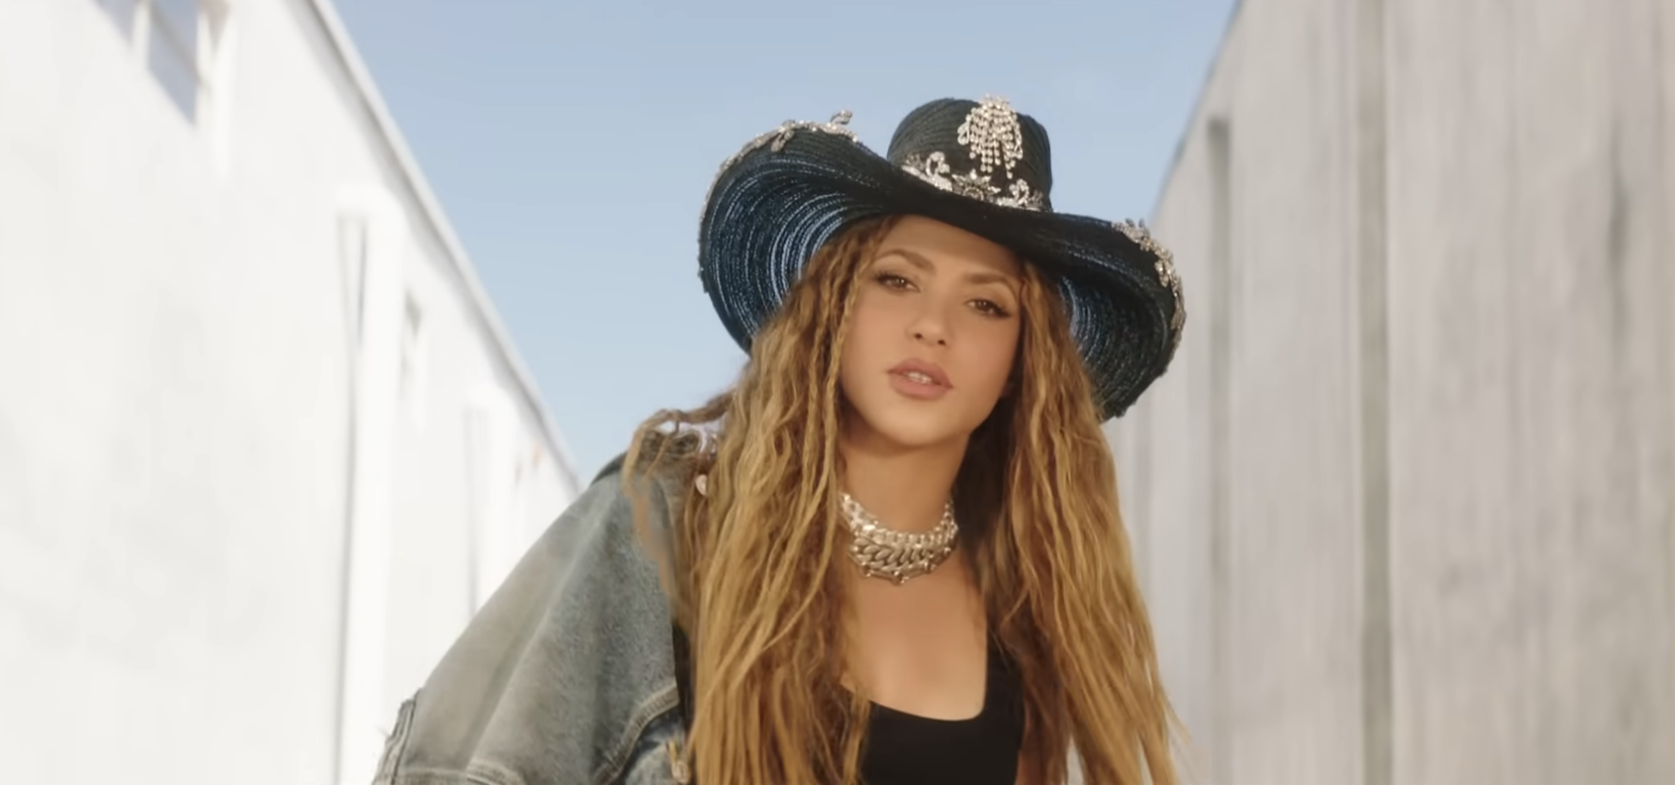 Shakira wearing a wide-brimmed hat